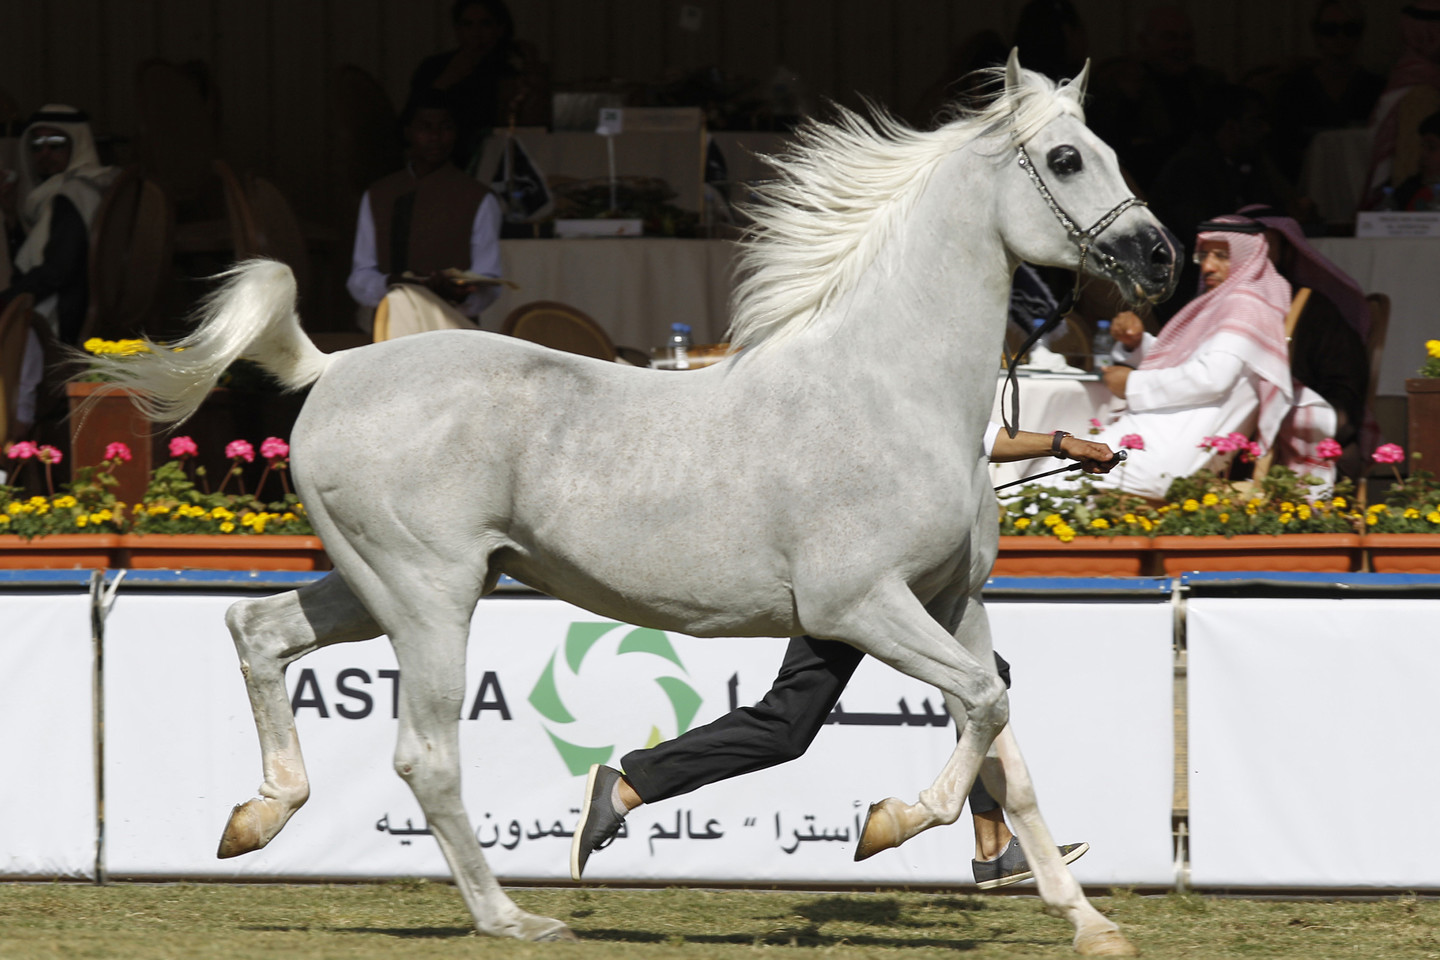  Ilgaamžiai, energingi, paklusnūs ir ištvermingi arabų žirgai naudojami ir kitoms žirgų veislėms pagerinti.<br>Scanpix nuotr.